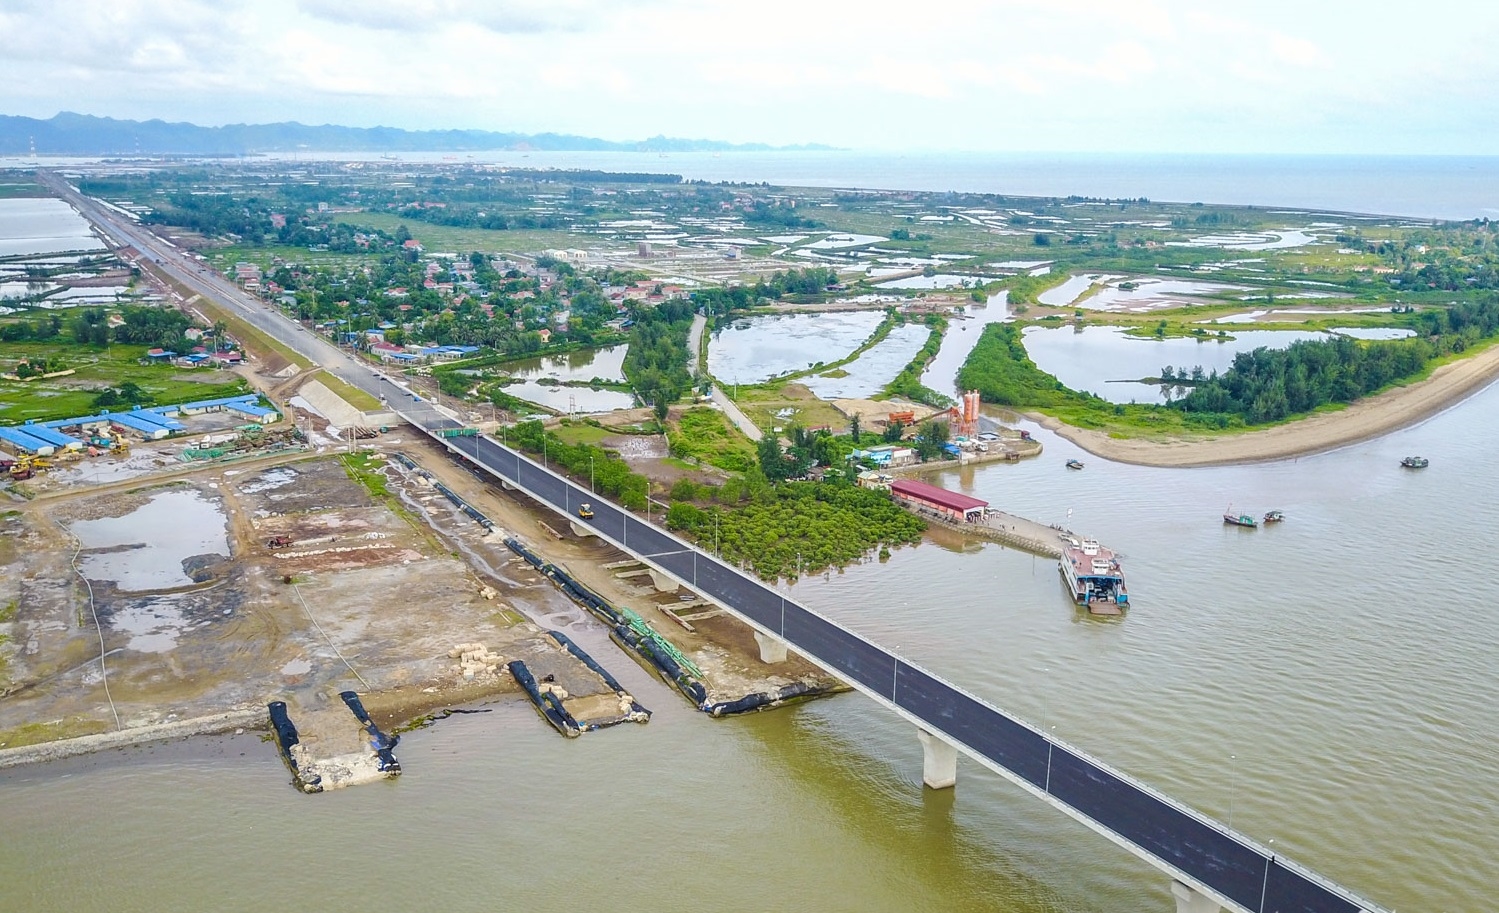 Cầu Tân Vũ - Lạch Huyện là cây cầu vượt iển dài nhất Việt Nam tính đến nay (dài 5,4km), phá thế “ba không” cho huyện Cát Hải.